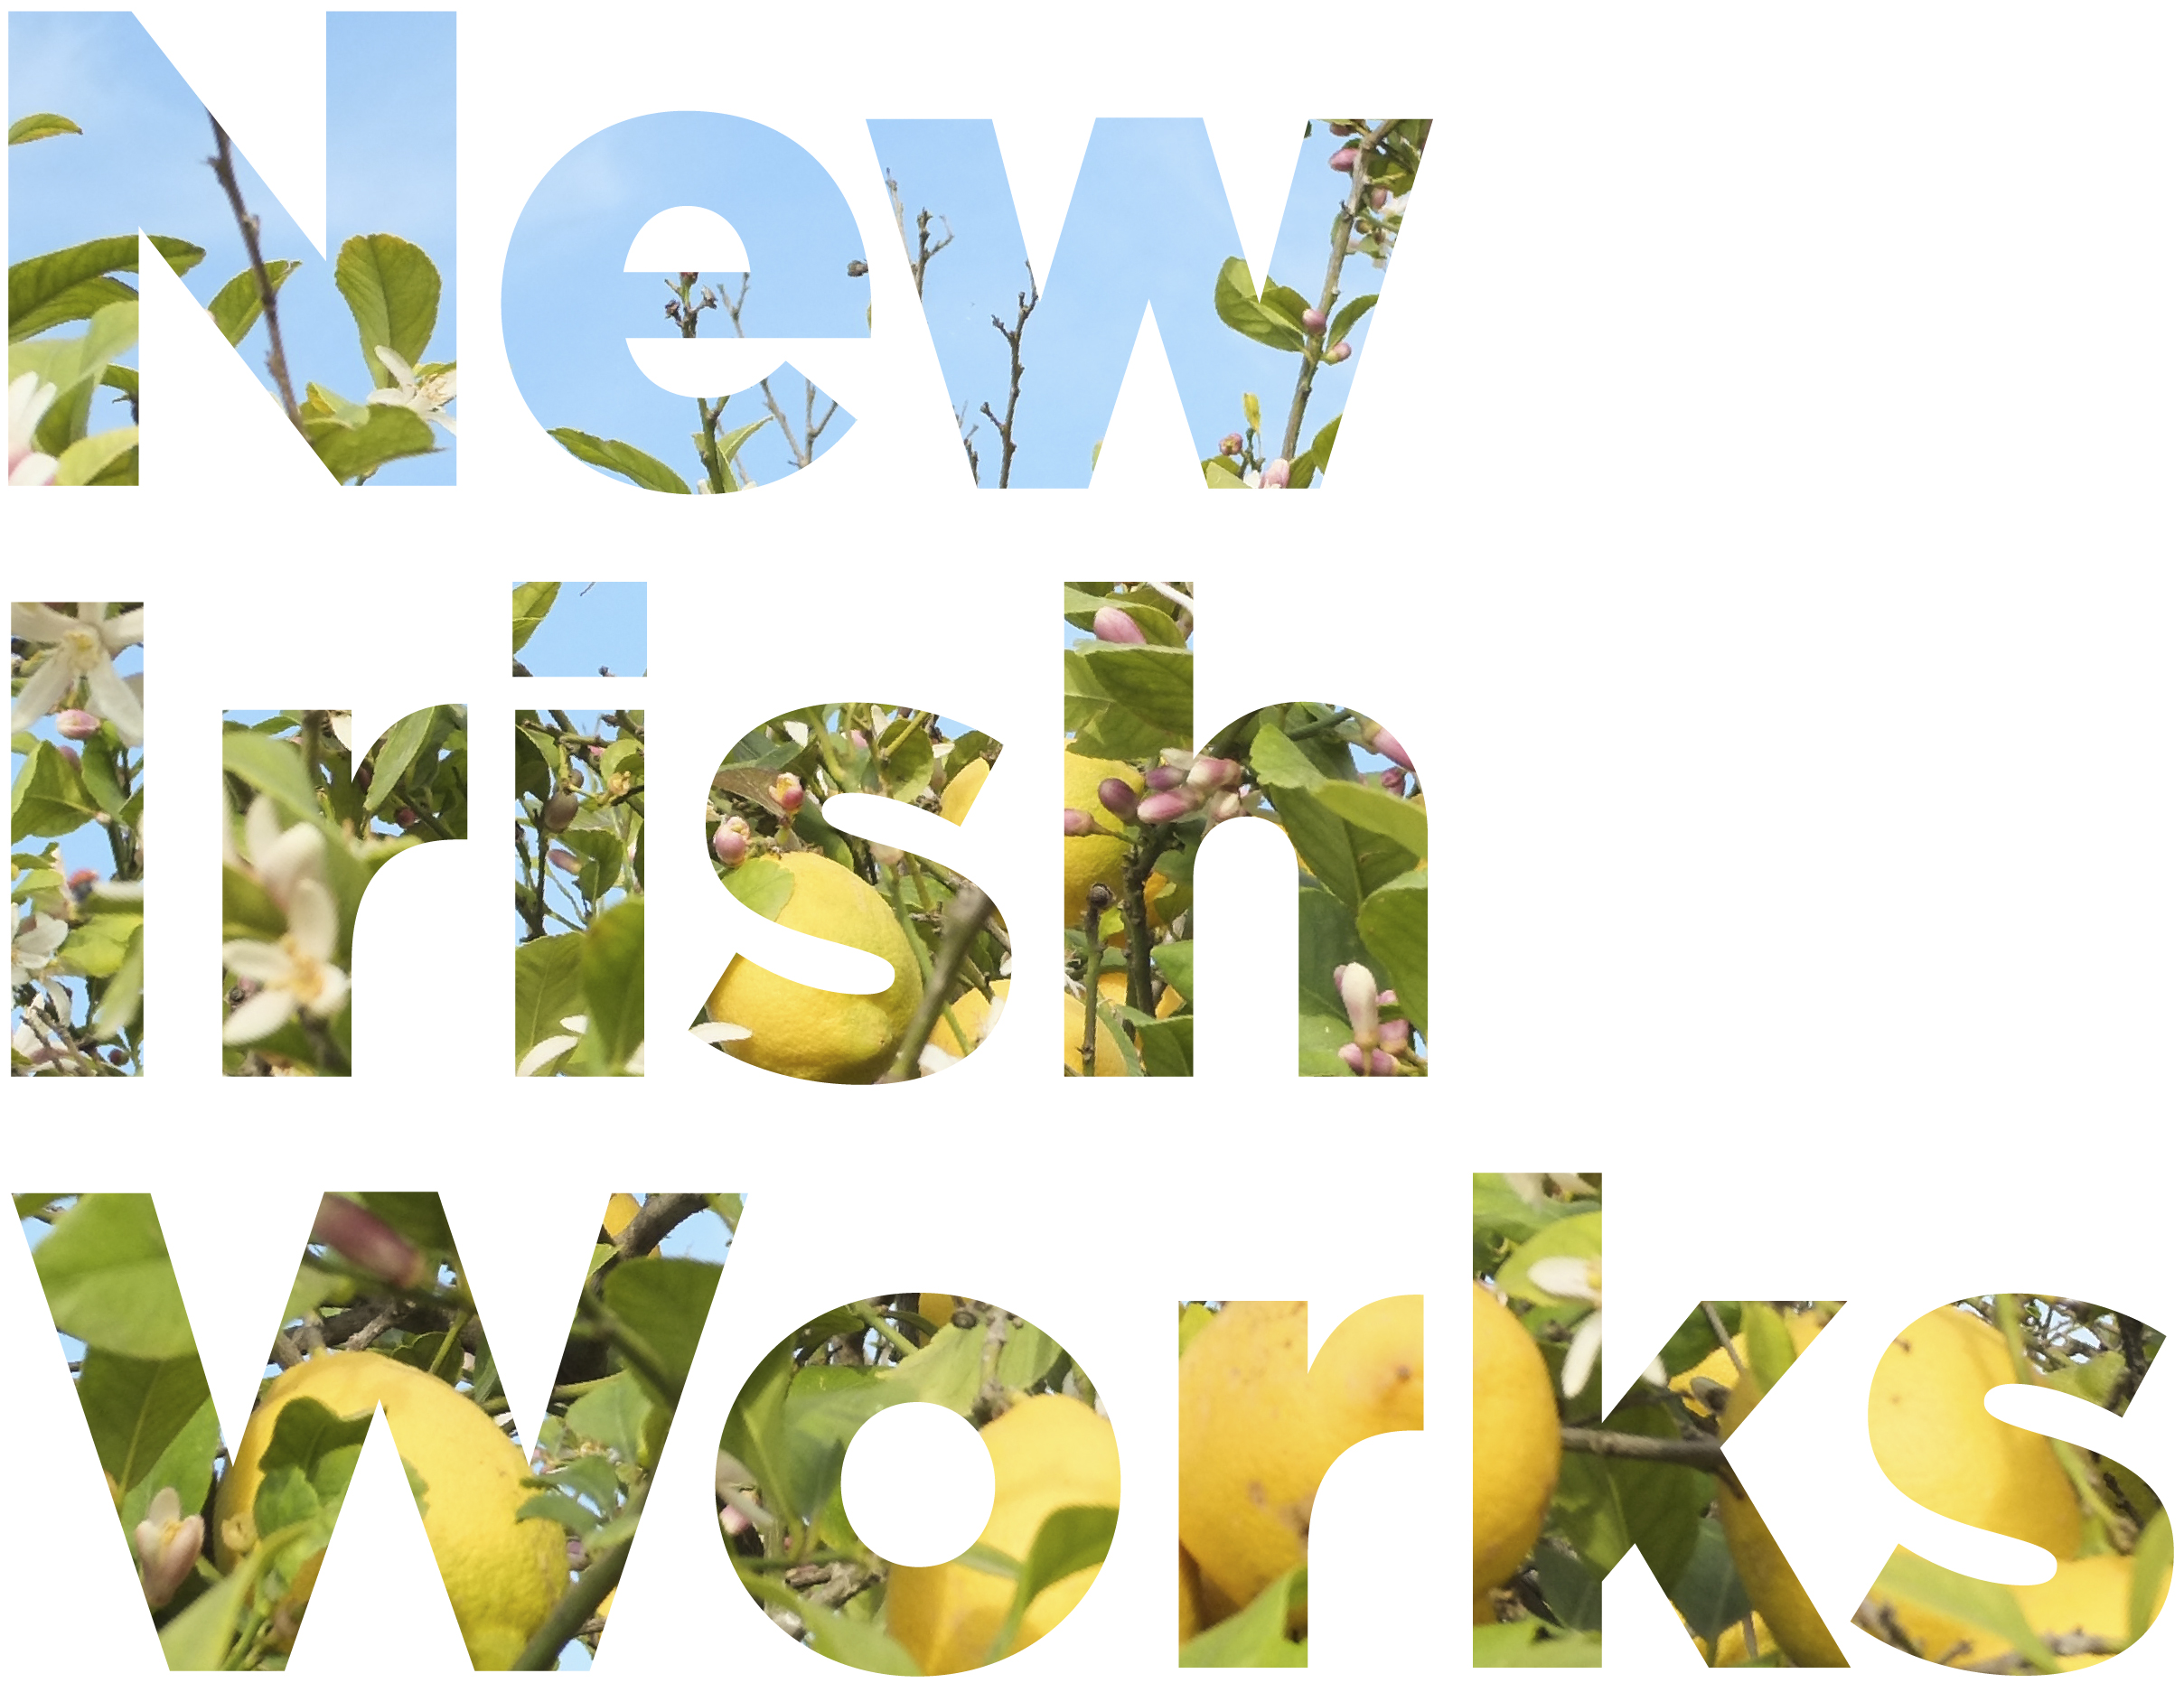 New Irish Works